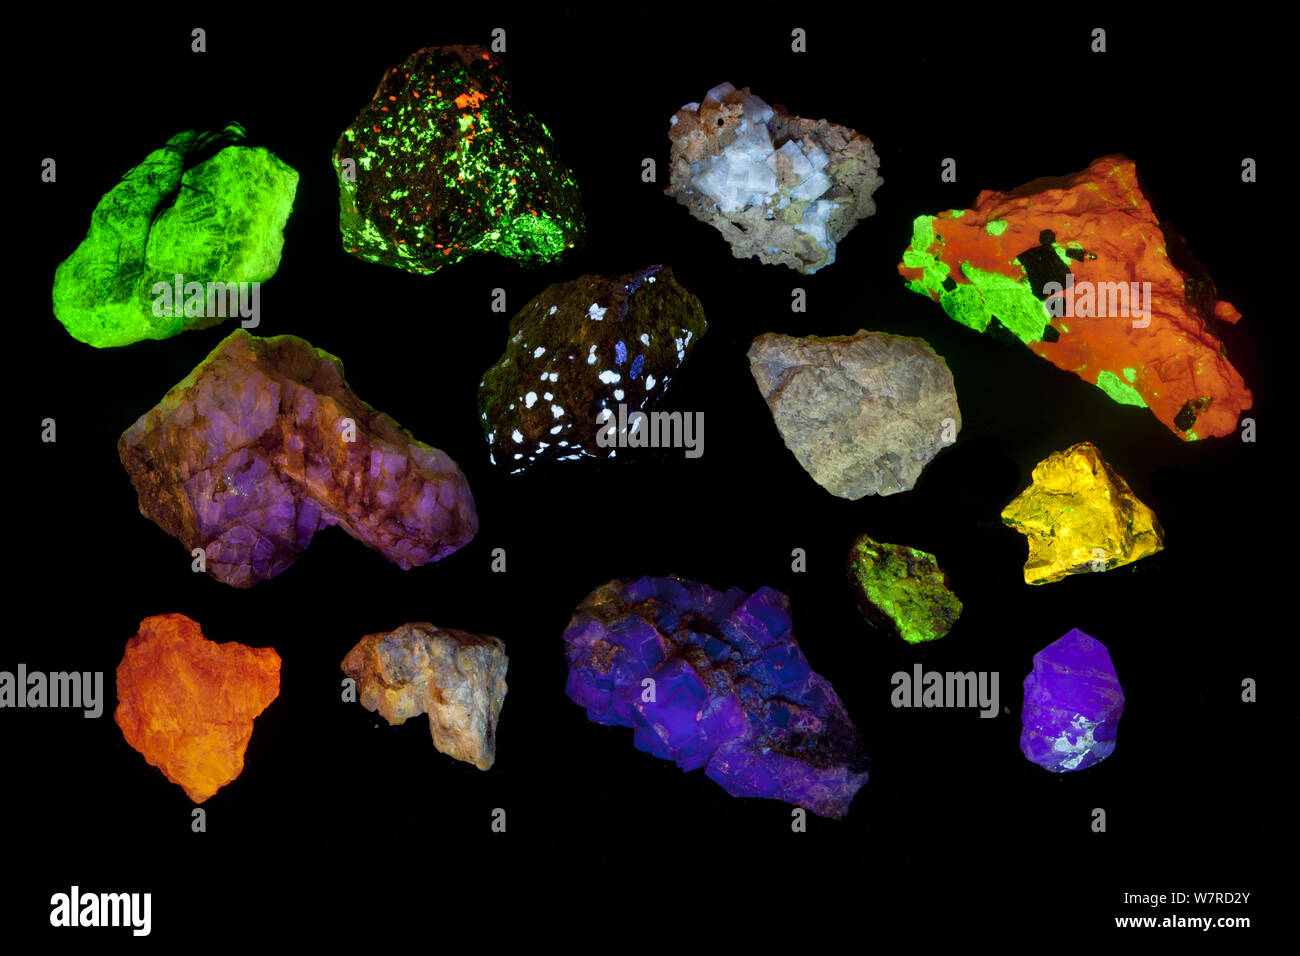 Diversos minerales fluorescentes bajo la luz ultravioleta, incluyendo Willemite, aragonite, fluorita y el zircón. Ver imagen 1434814 para identificaciones específicas y el país de origen. Foto de stock